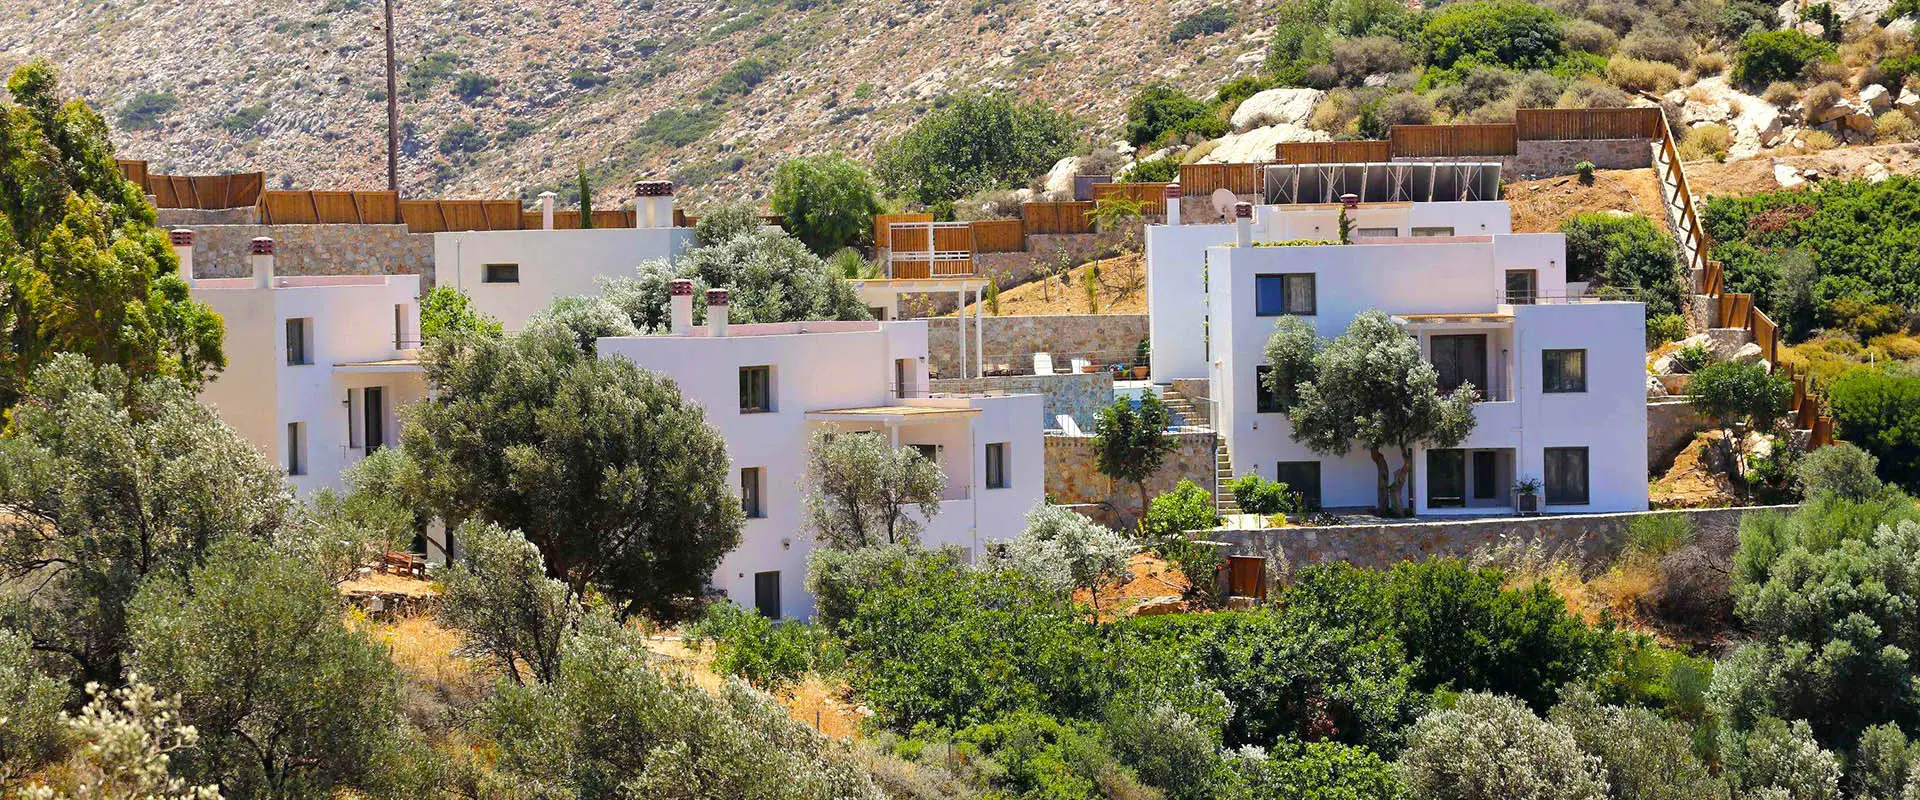 Vacances écotouristiques en Crète: villas écologiques